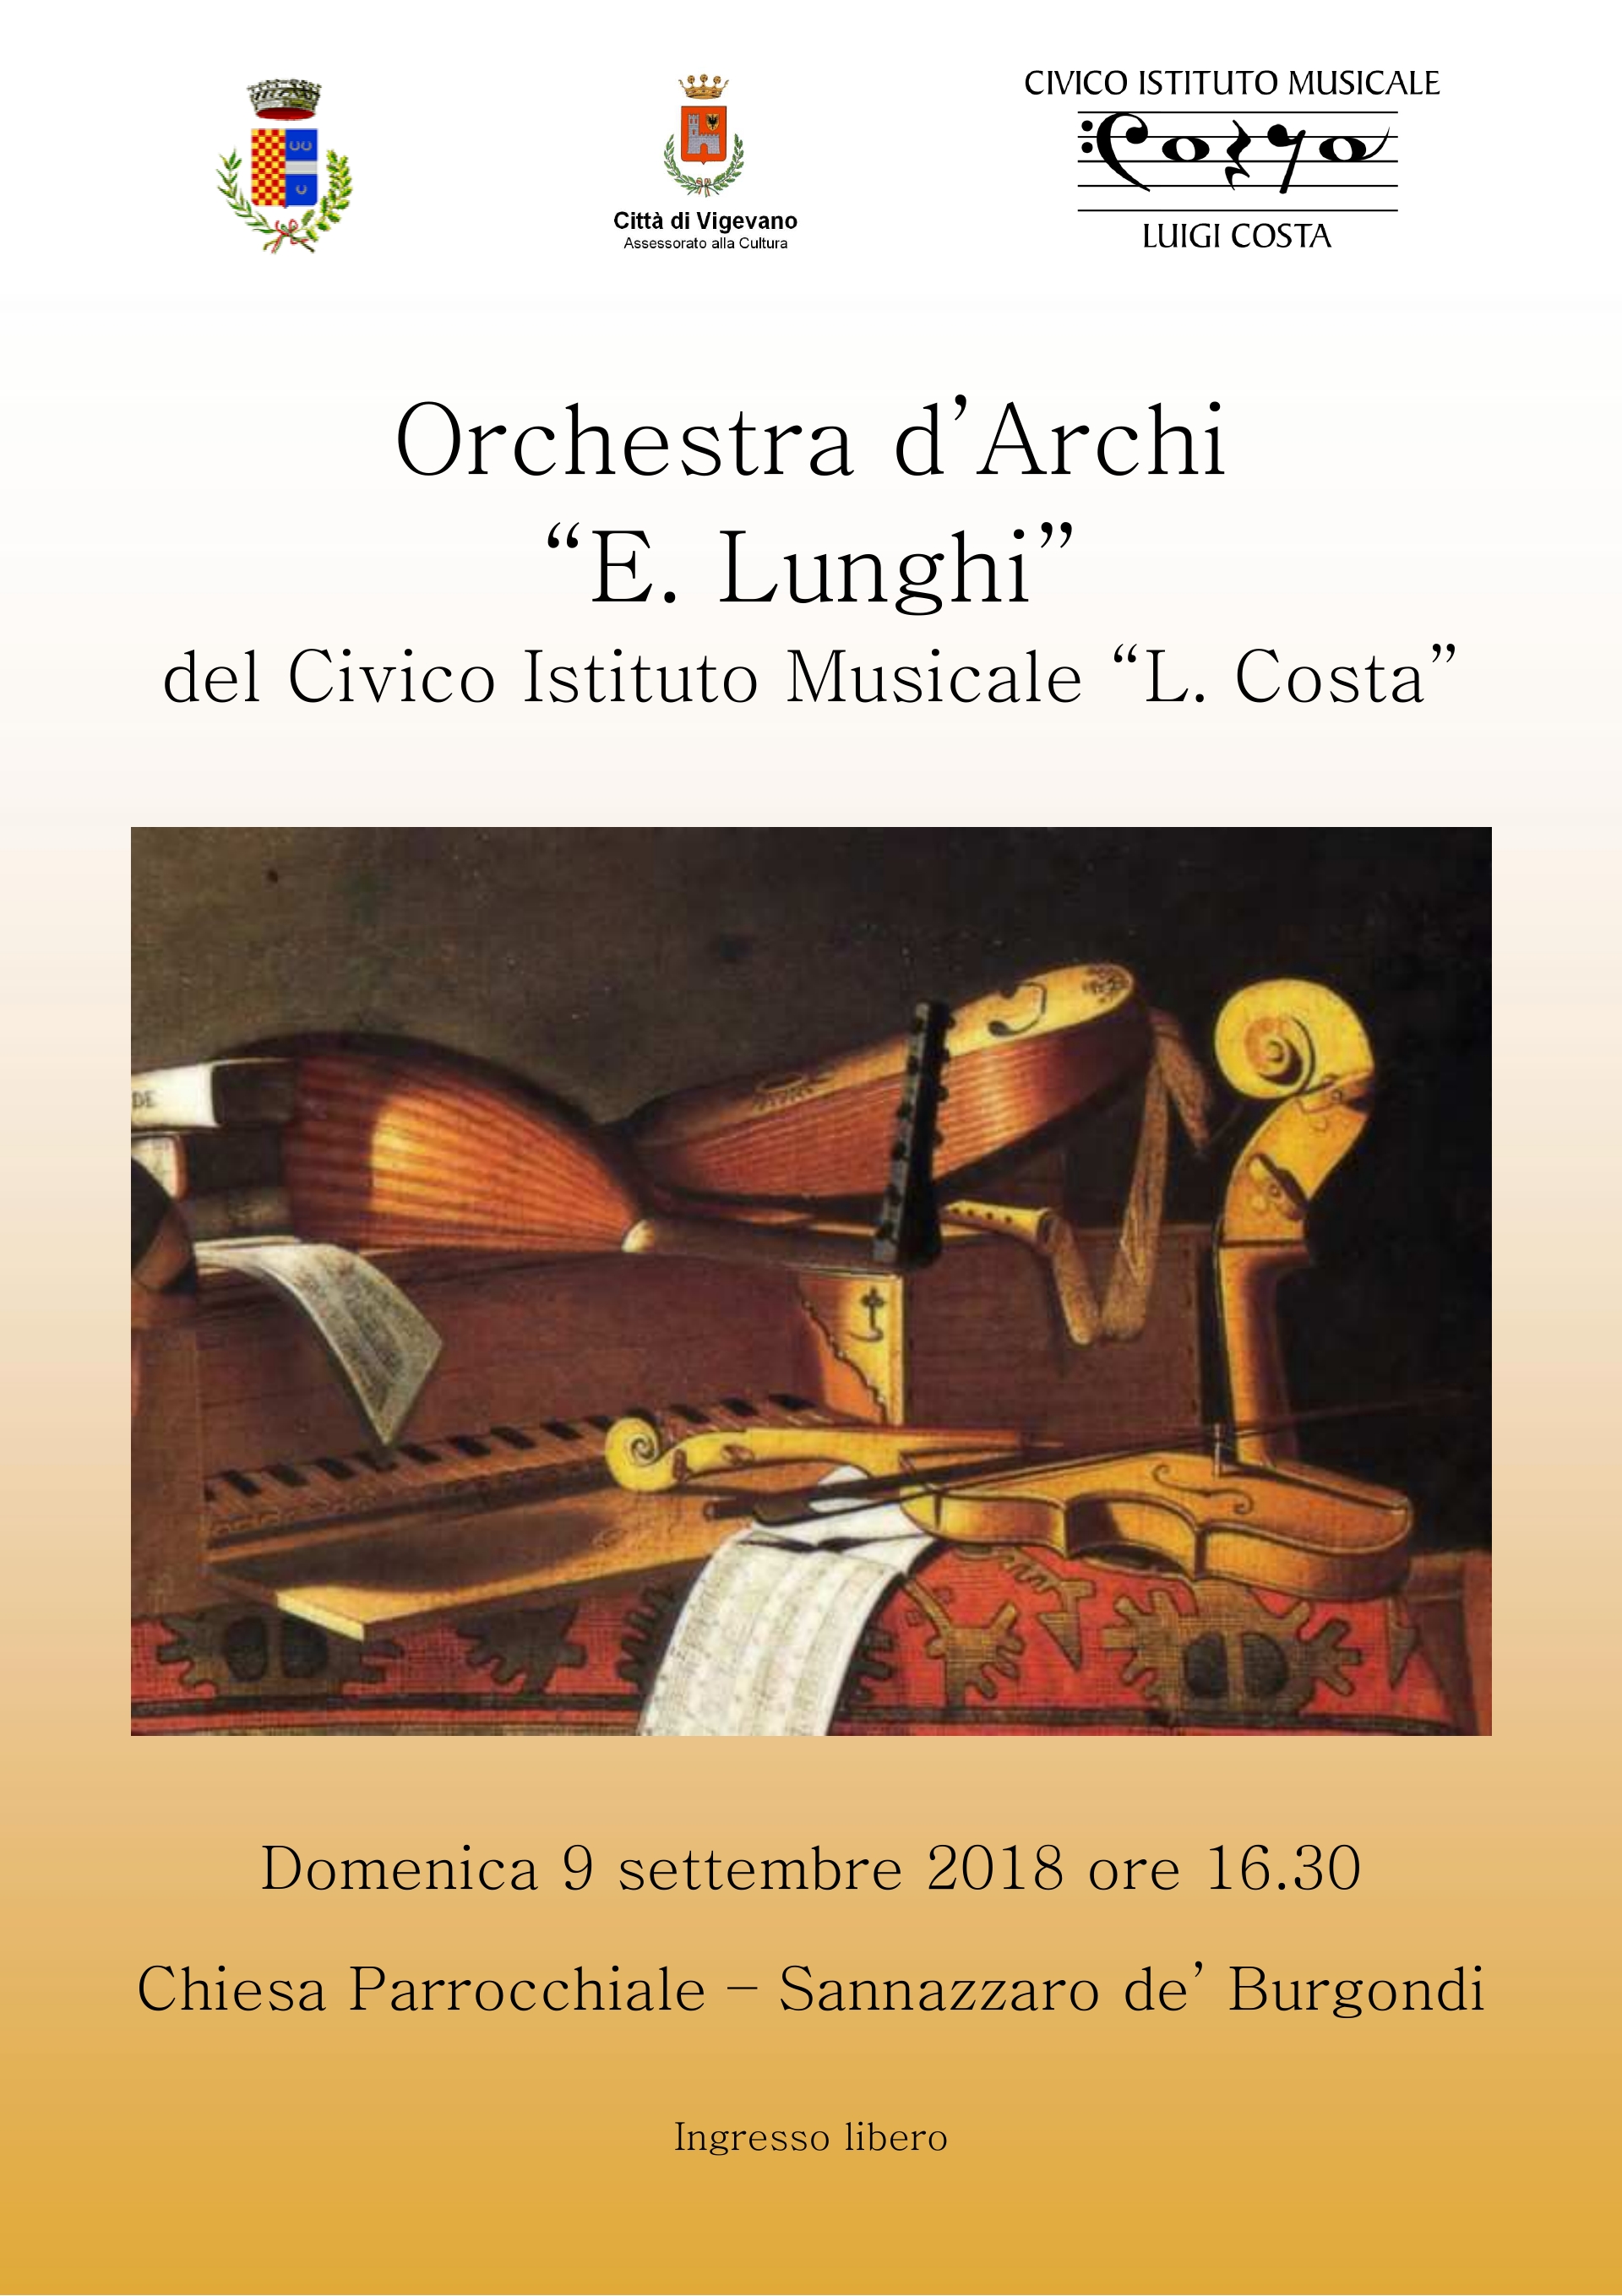 articoli/586/Orchestra Archi Locandina Sannazzaro.jpg